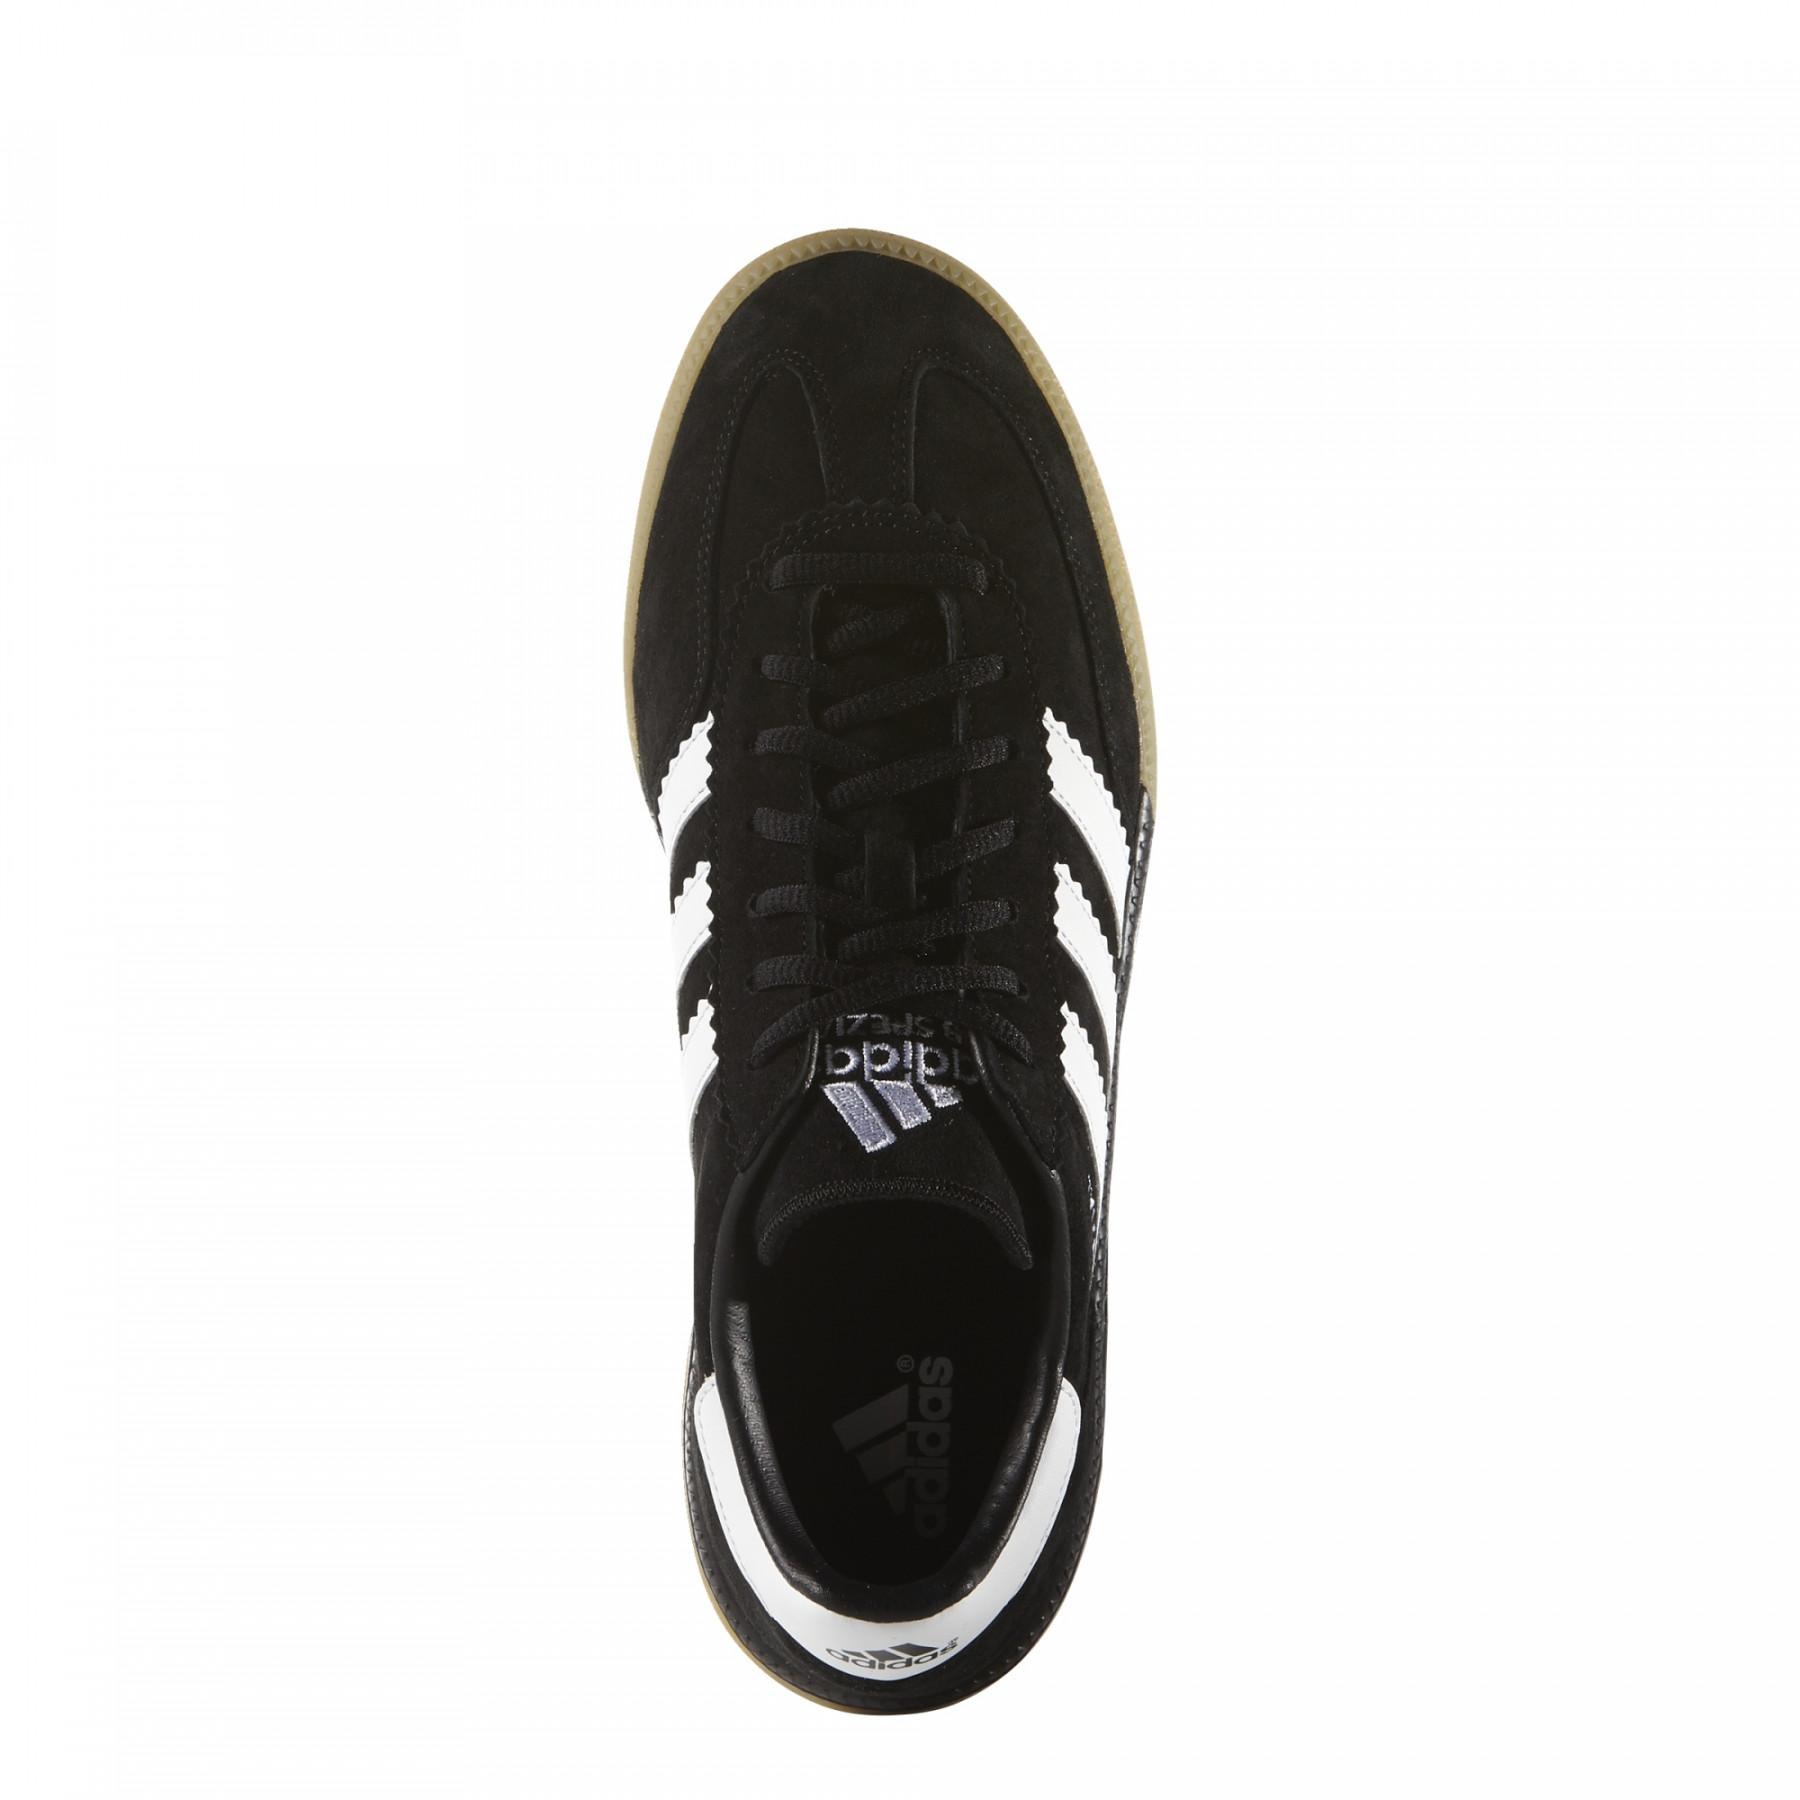 Schuhe adidas HB Spezial Noir